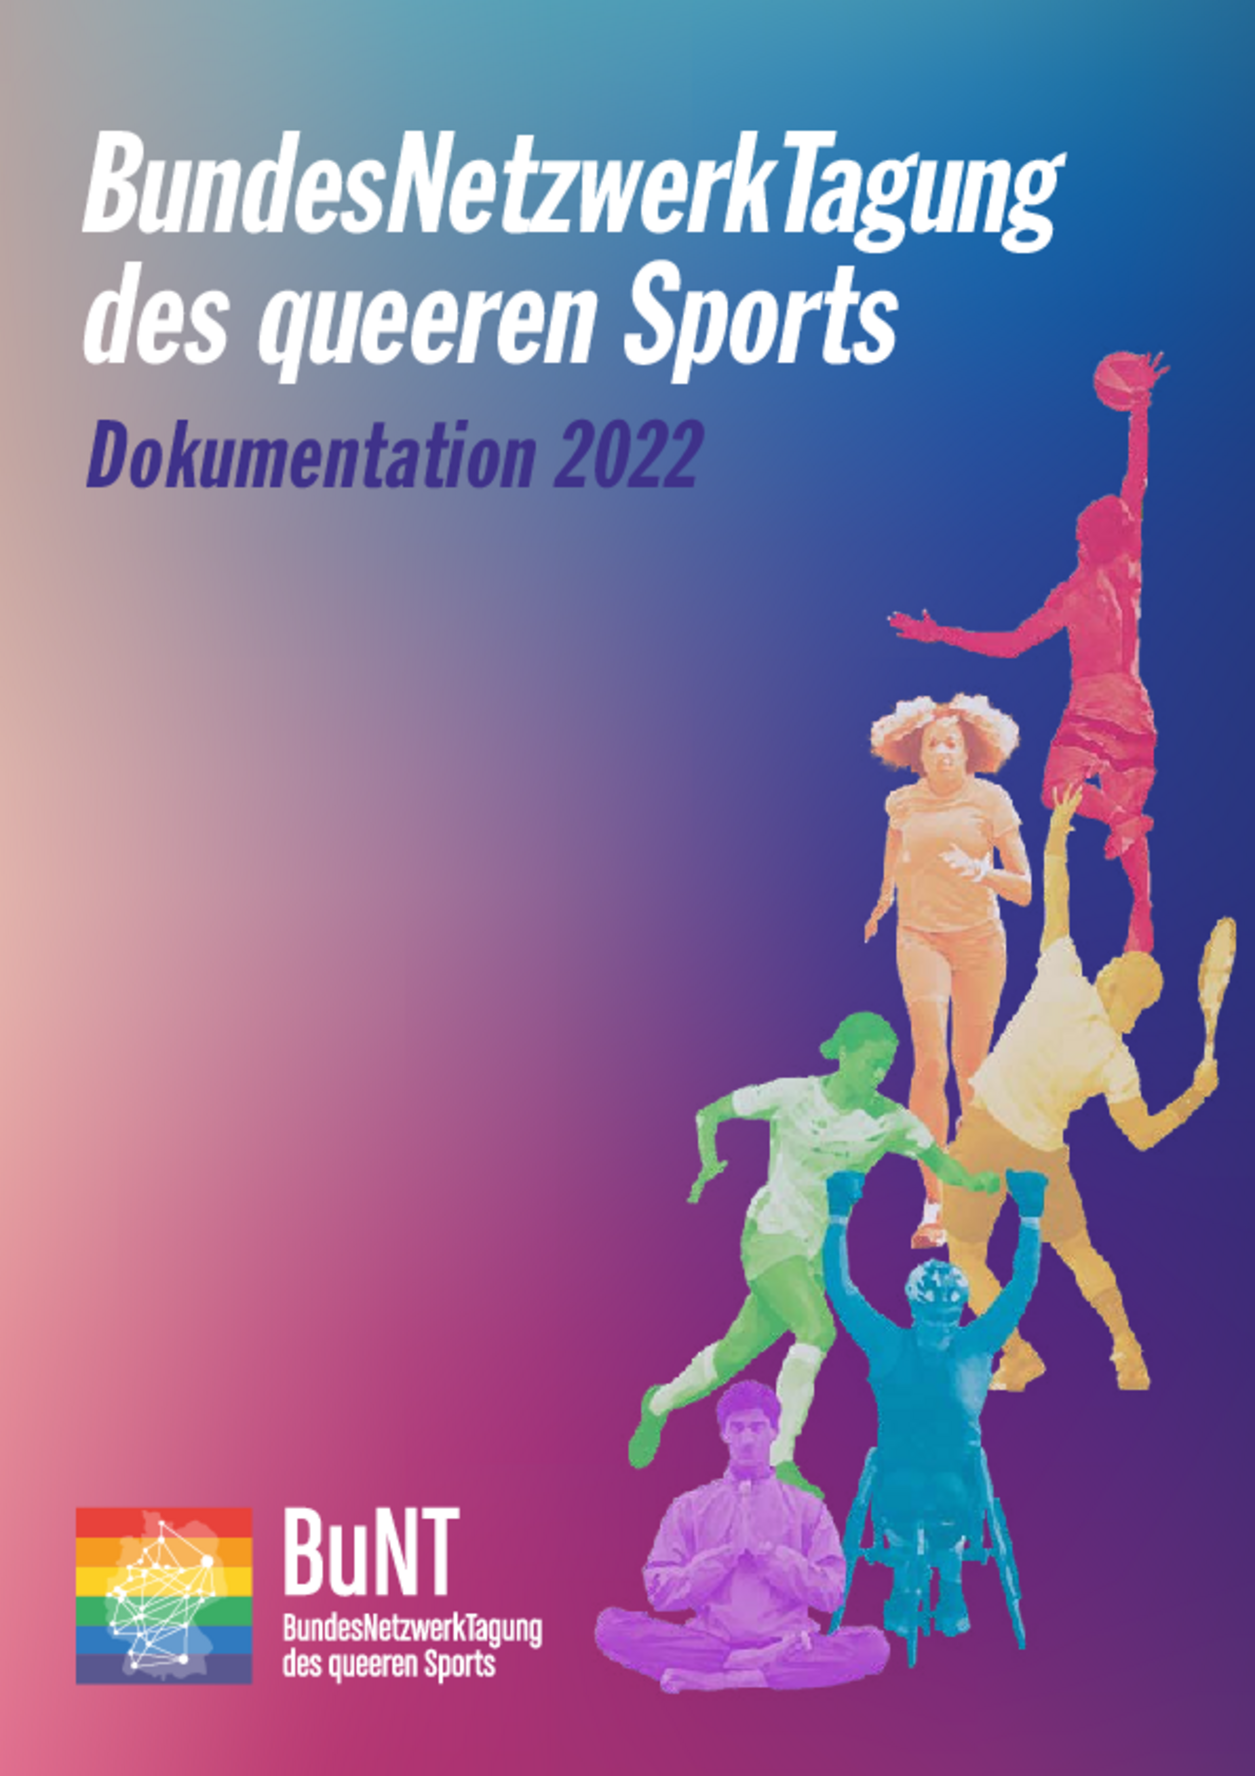 Titelseite der Dokumentation der BundesNetzwerkTagung des queeren Sports 2022